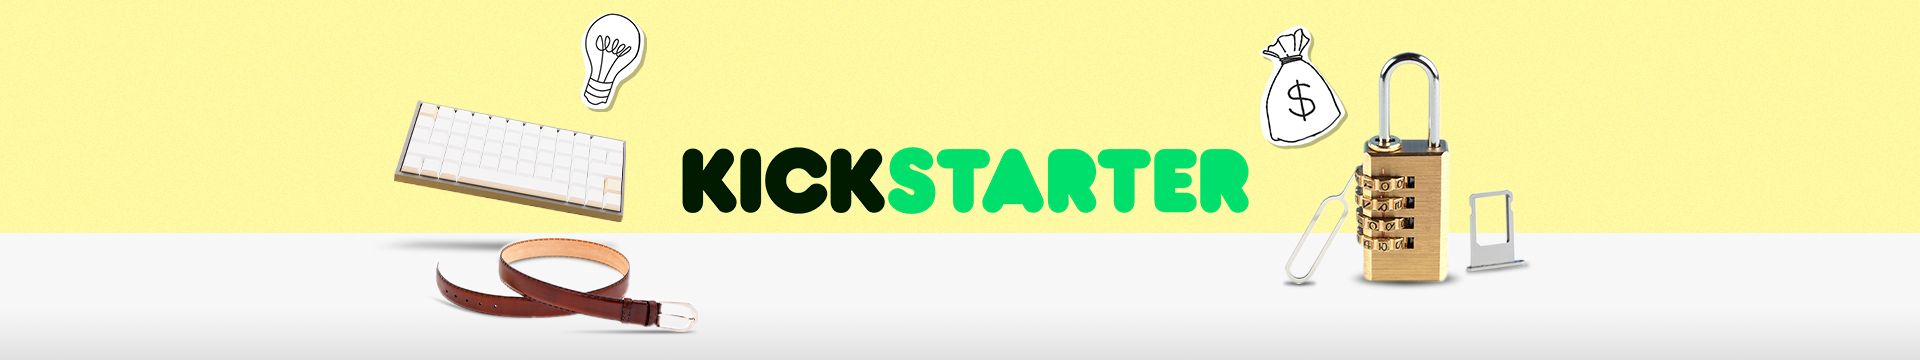 คุณเองก็เป็นเจ้าของนวัตกรรมใหม่ๆ ได้ก่อนใครด้วย “Kickstarter”